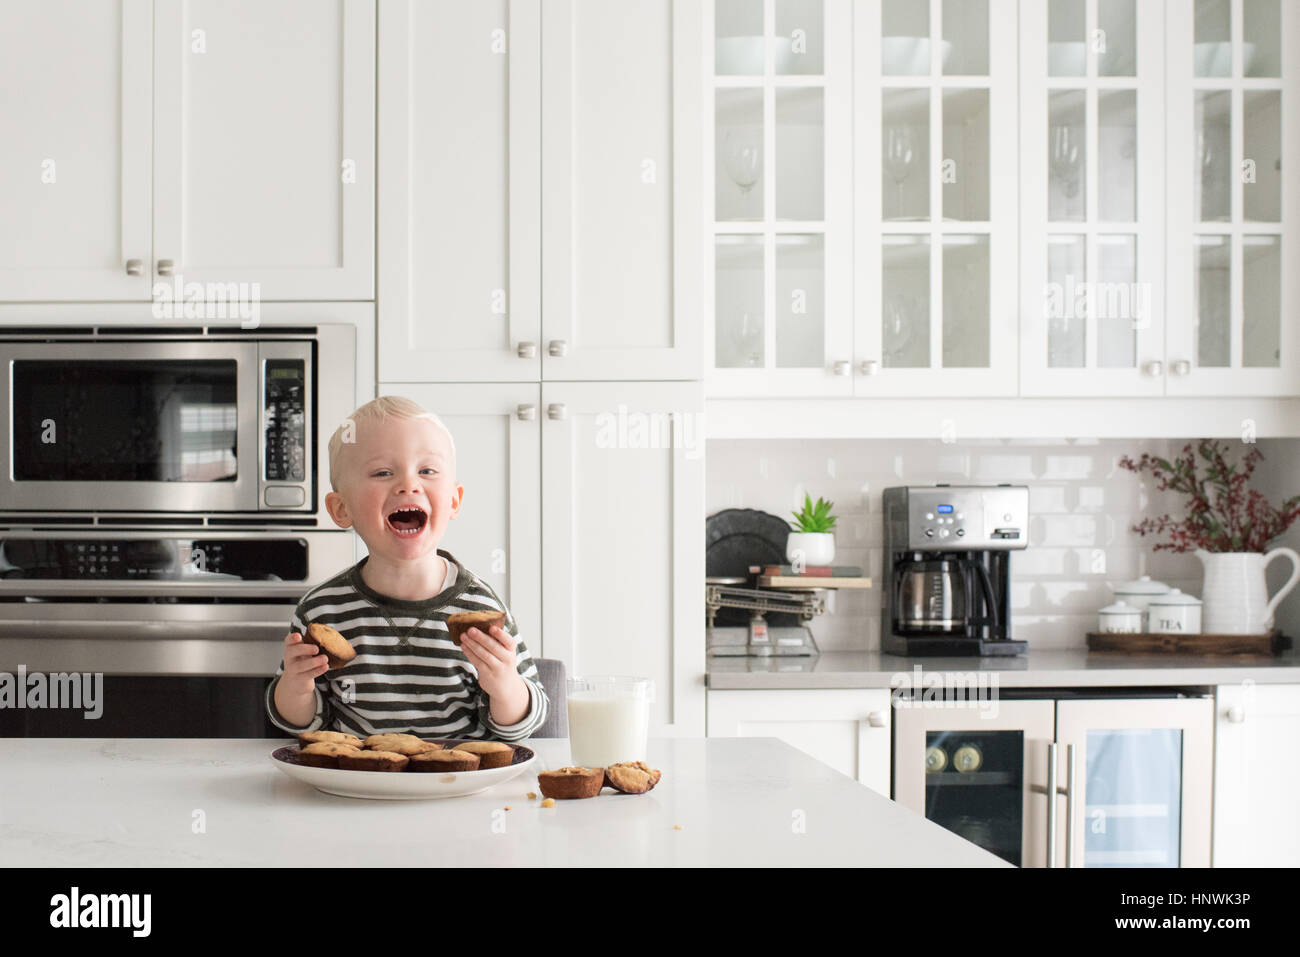 Jeune garçon dans la cuisine, tenant des gâteaux fraîchement préparés, smiling Banque D'Images